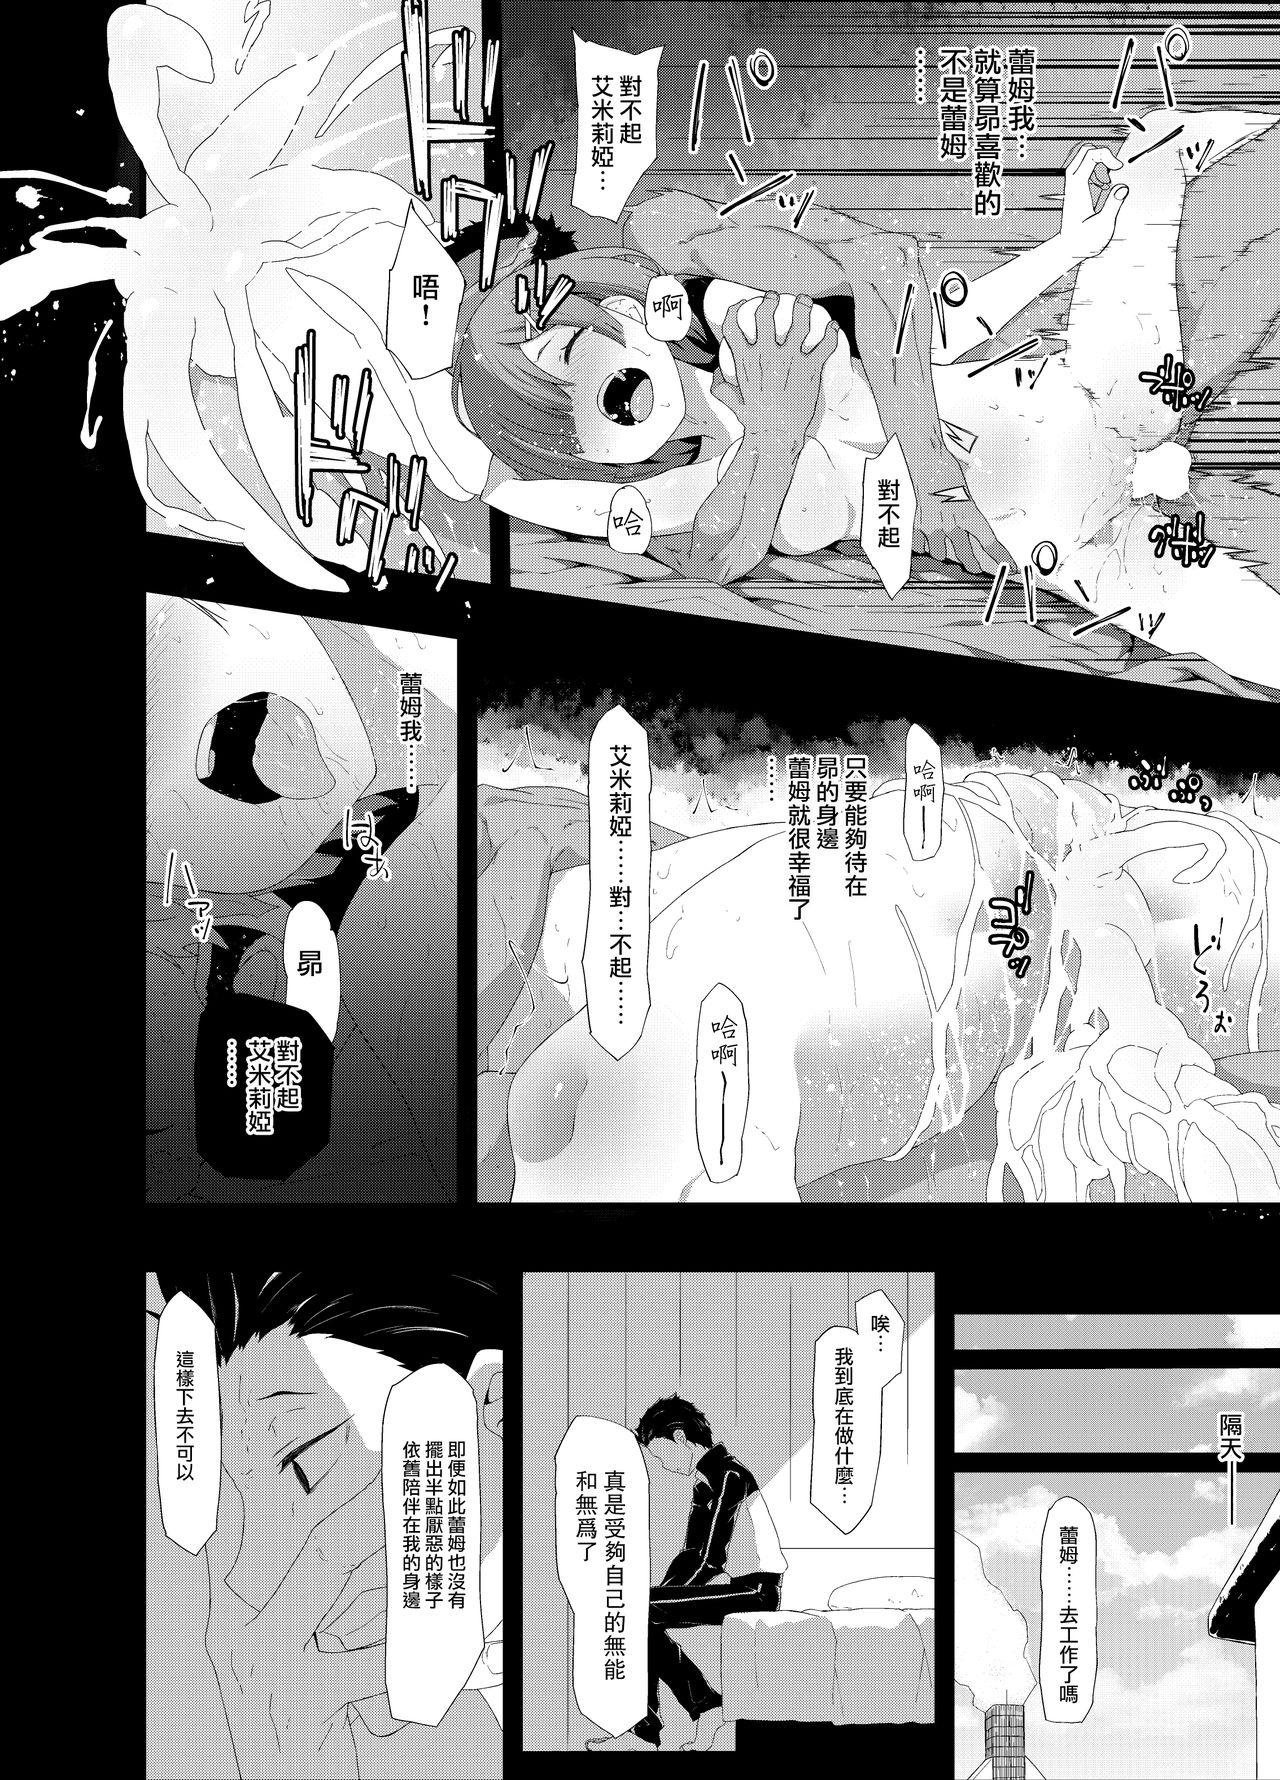 Yanks Featured Natsuki Rem - Re zero kara hajimeru isekai seikatsu Mexicana - Page 4